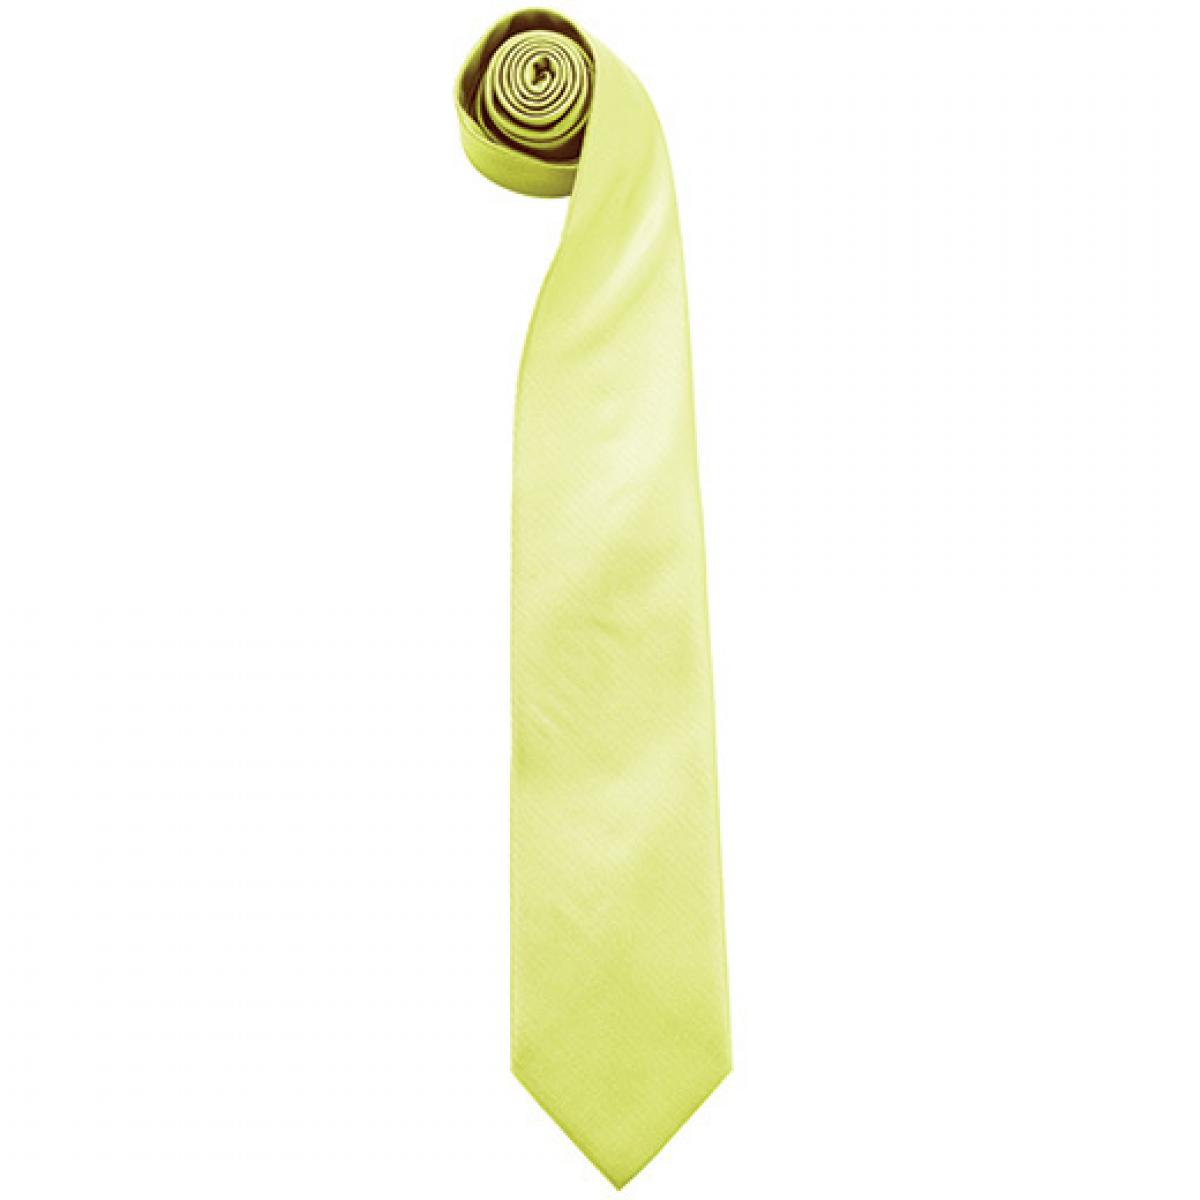 Hersteller: Premier Workwear Herstellernummer: PR765 Artikelbezeichnung: Krawatte Uni-Fashion / Colours Farbe: Lime (ca. Pantone 617C)